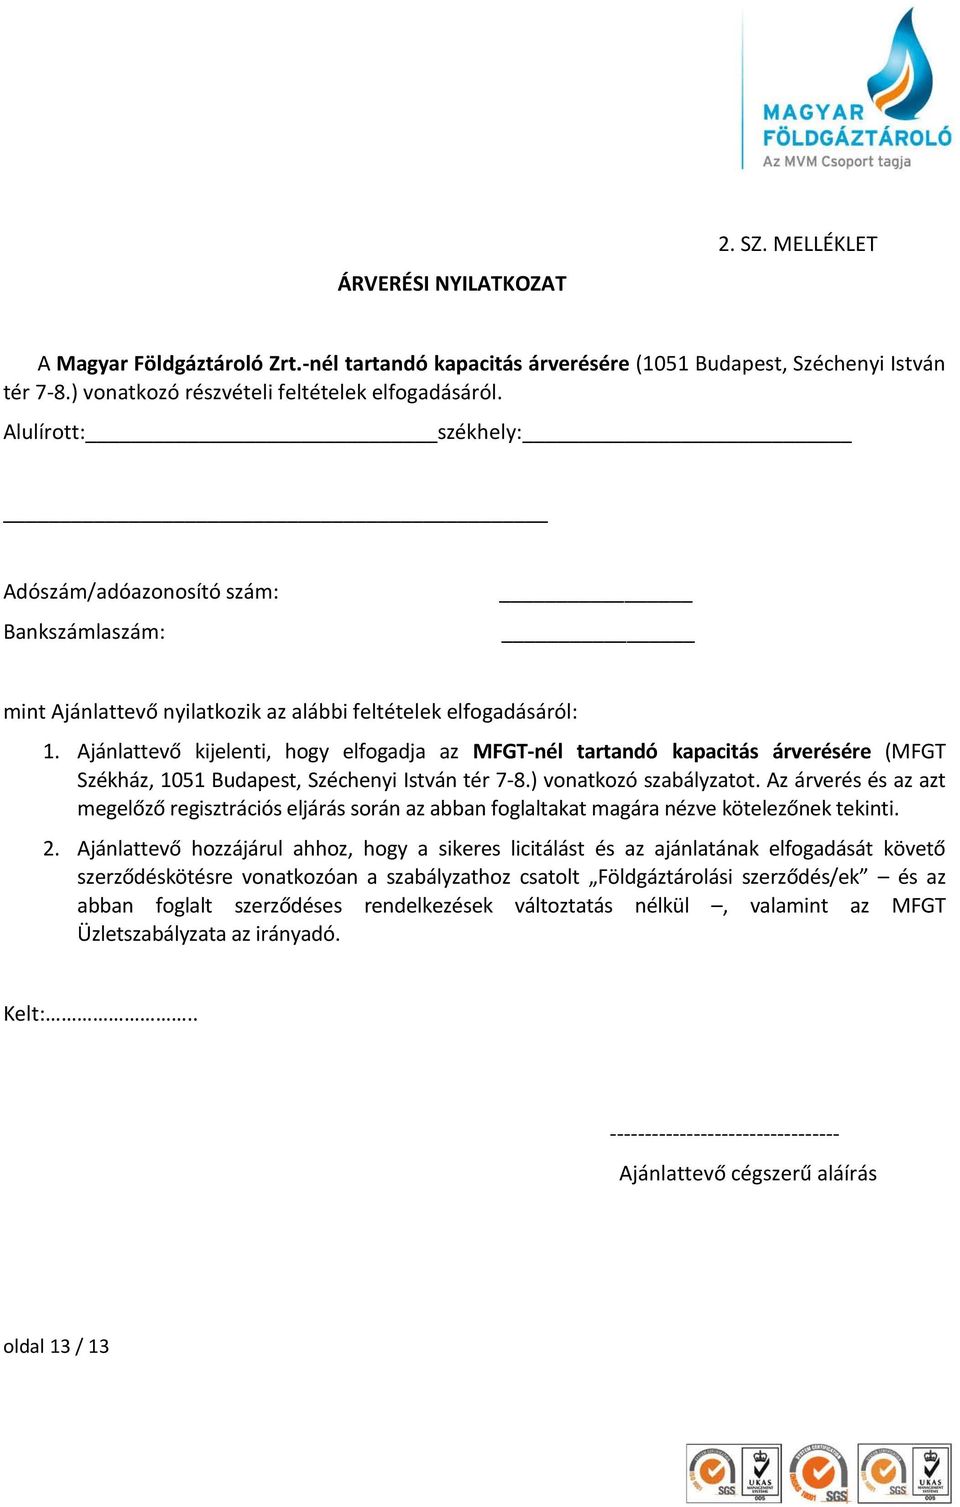 Ajánlattevő kijelenti, hogy elfogadja az MFGT-nél tartandó kapacitás árverésére (MFGT Székház, 1051 Budapest, Széchenyi István tér 7-8.) vonatkozó szabályzatot.